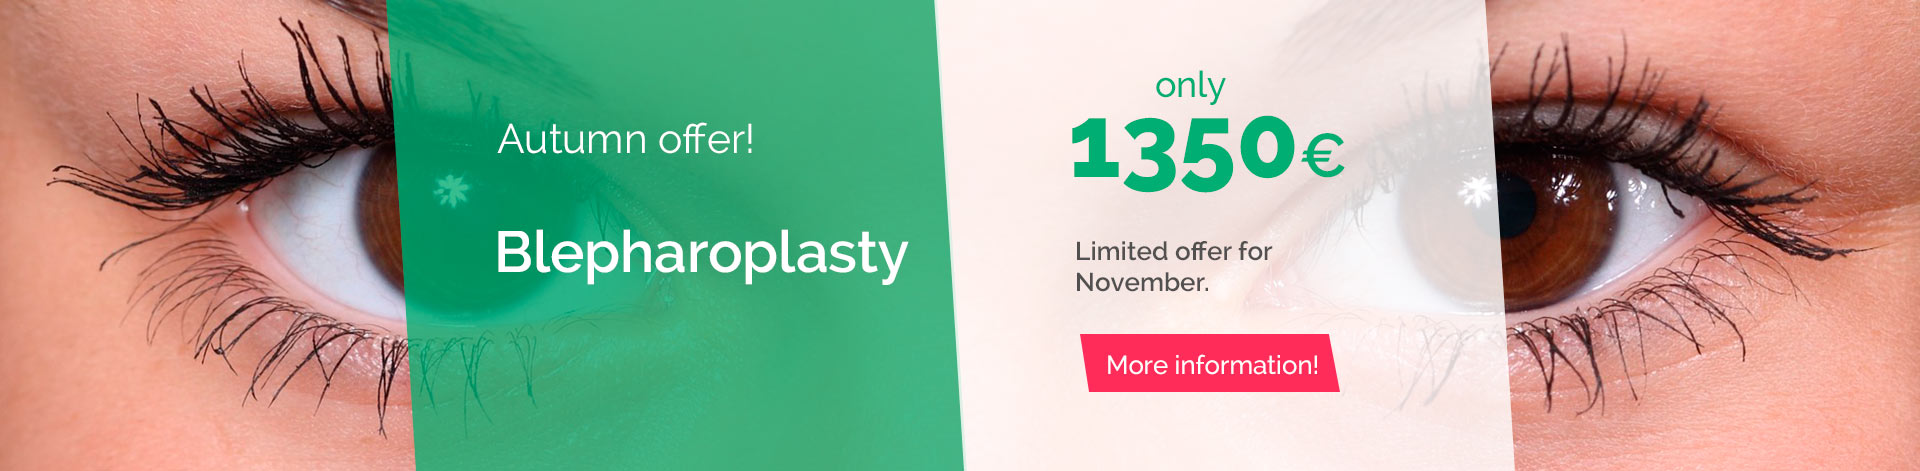 blepharoplasty offer